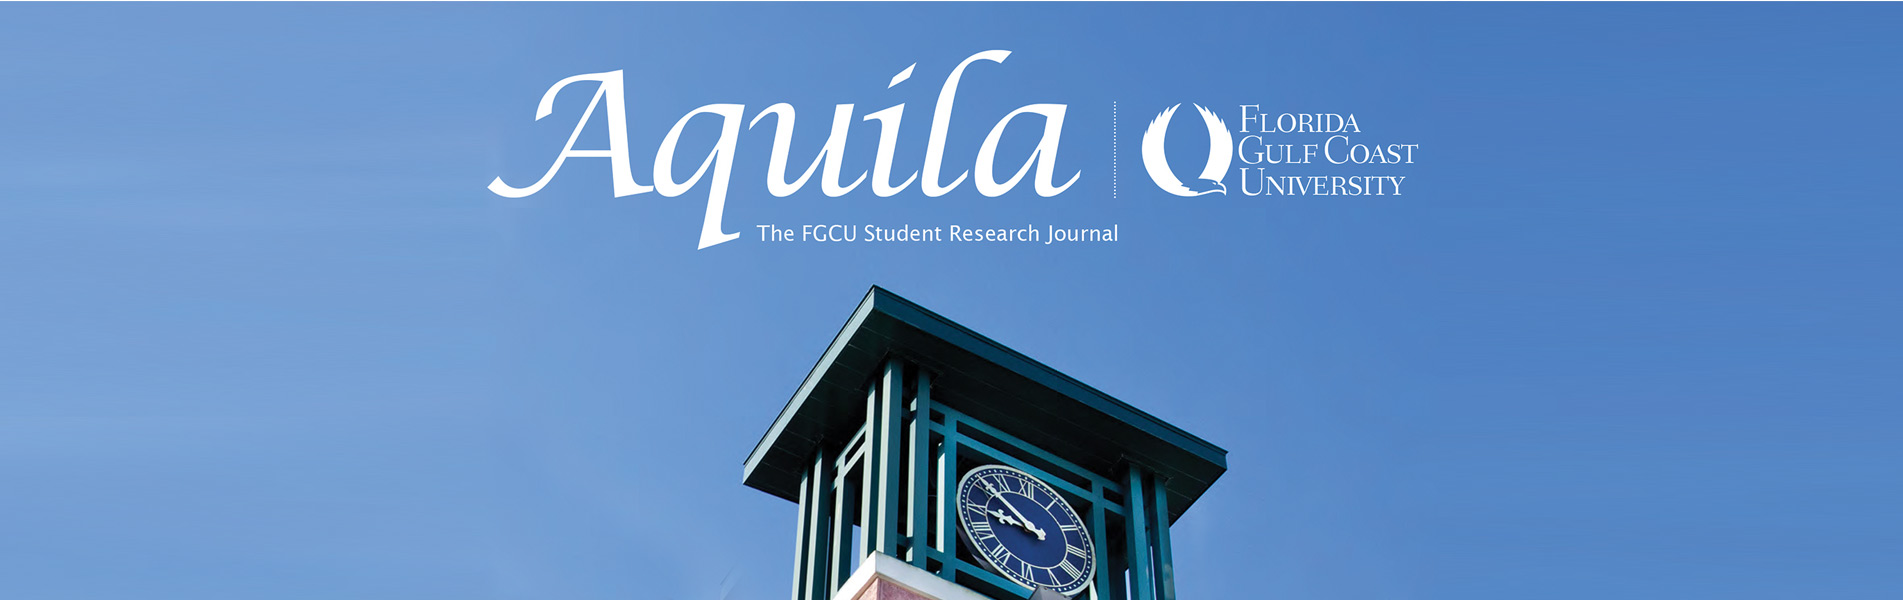 FGCU Student Success - Aquila